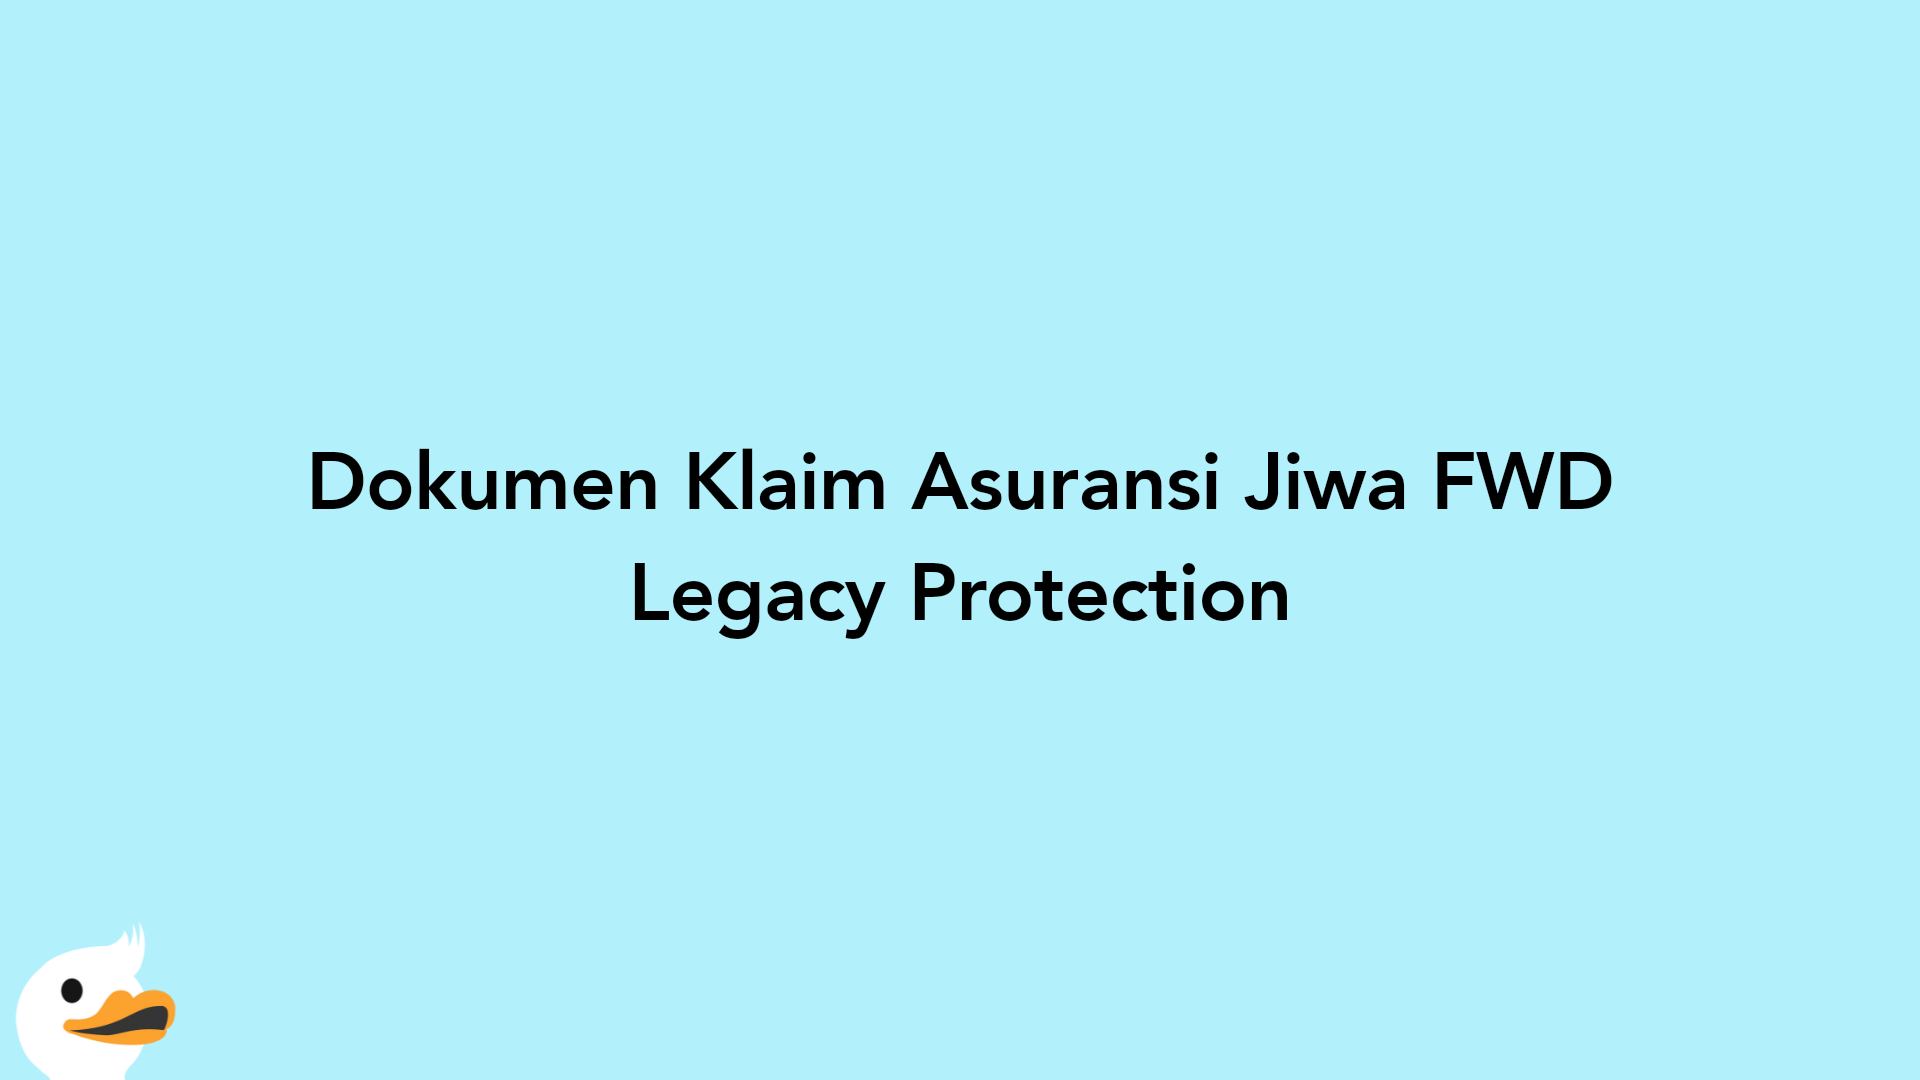 Dokumen Klaim Asuransi Jiwa FWD Legacy Protection